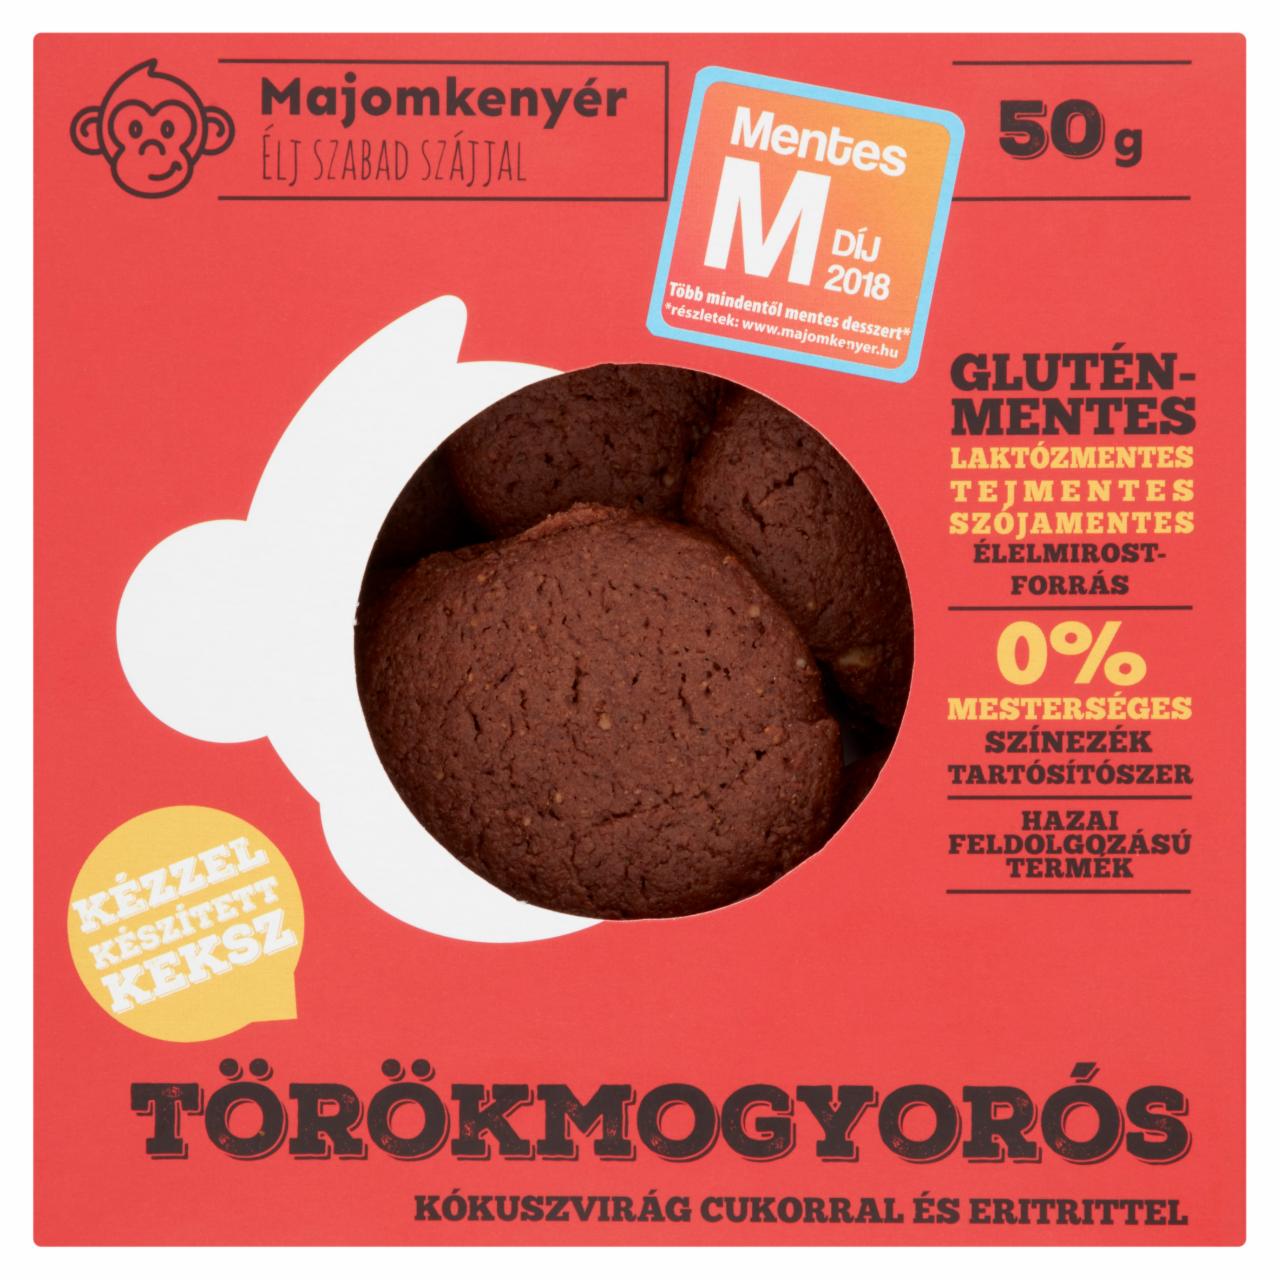 Képek - Majomkenyér törökmogyorós keksz kókuszvirág cukorral és édesítőszerrel 50 g